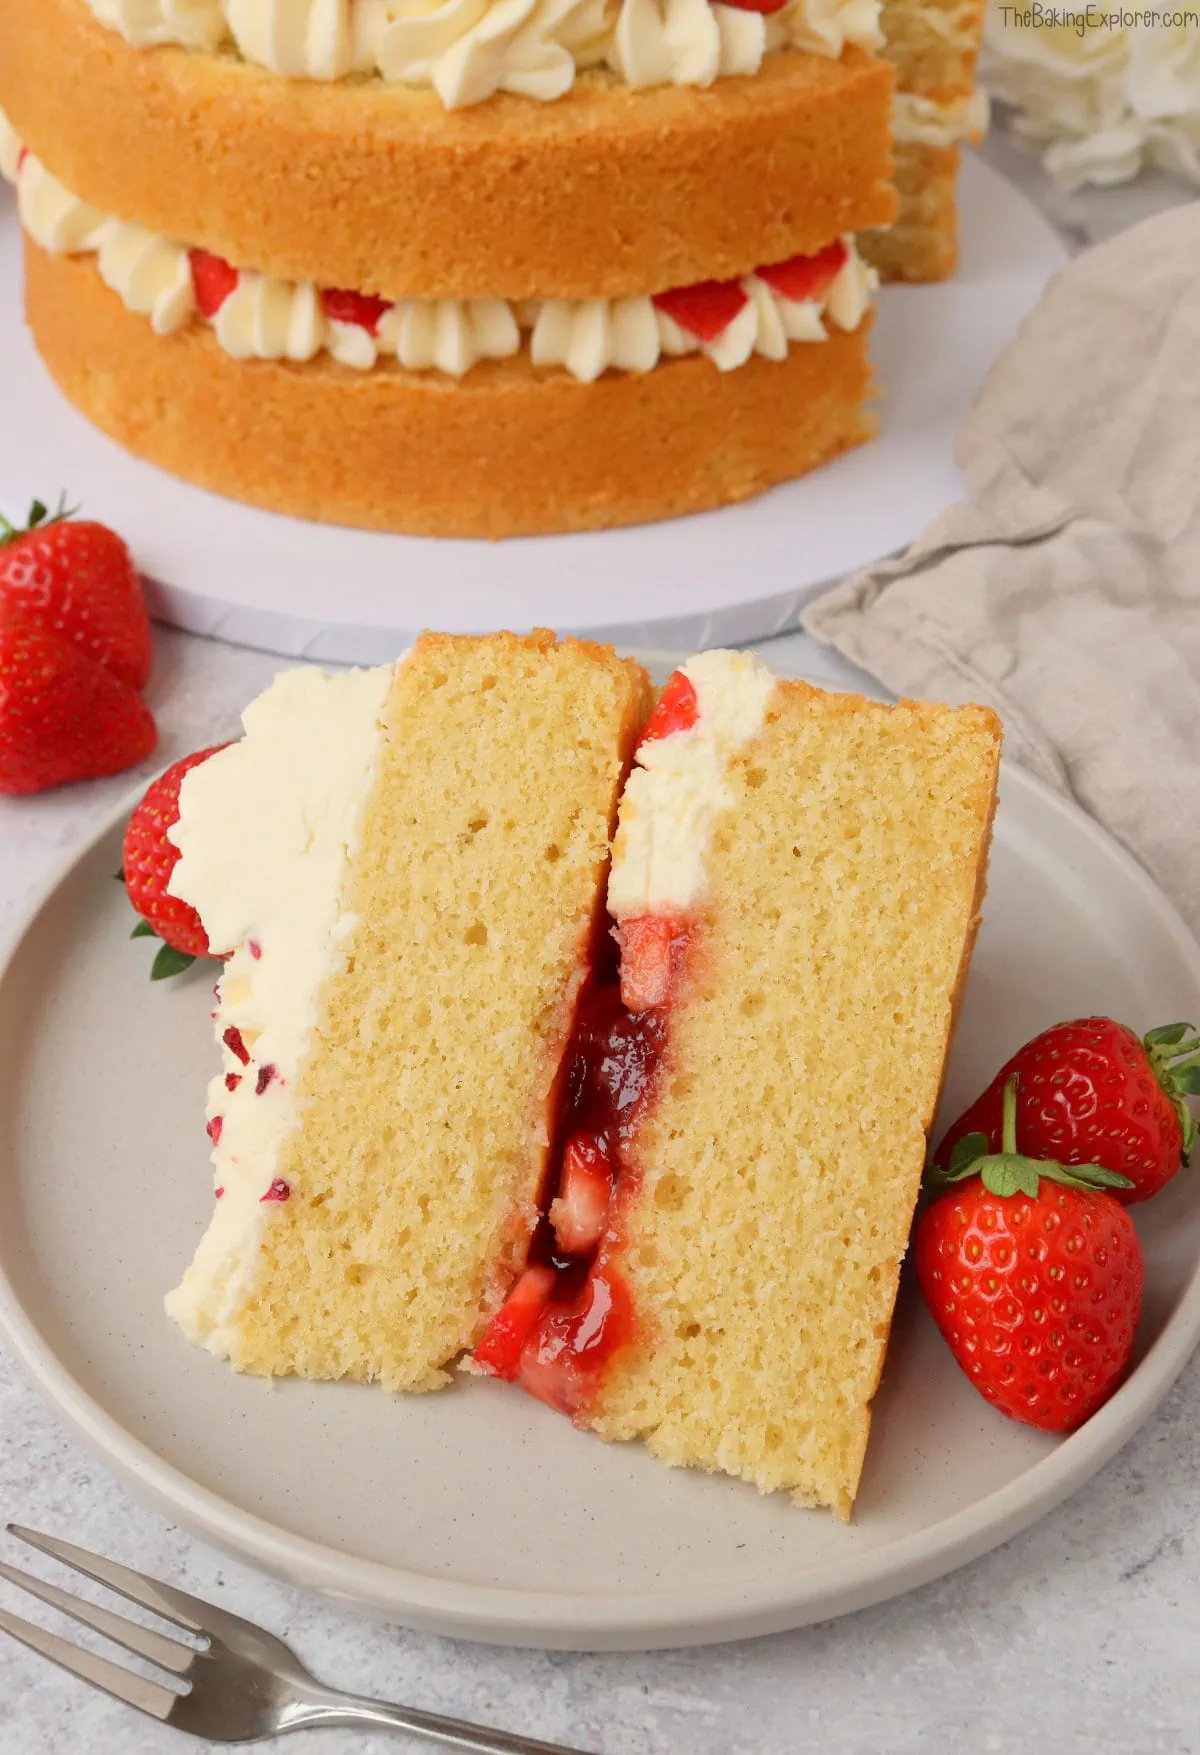 Strawberries & Cream Cake